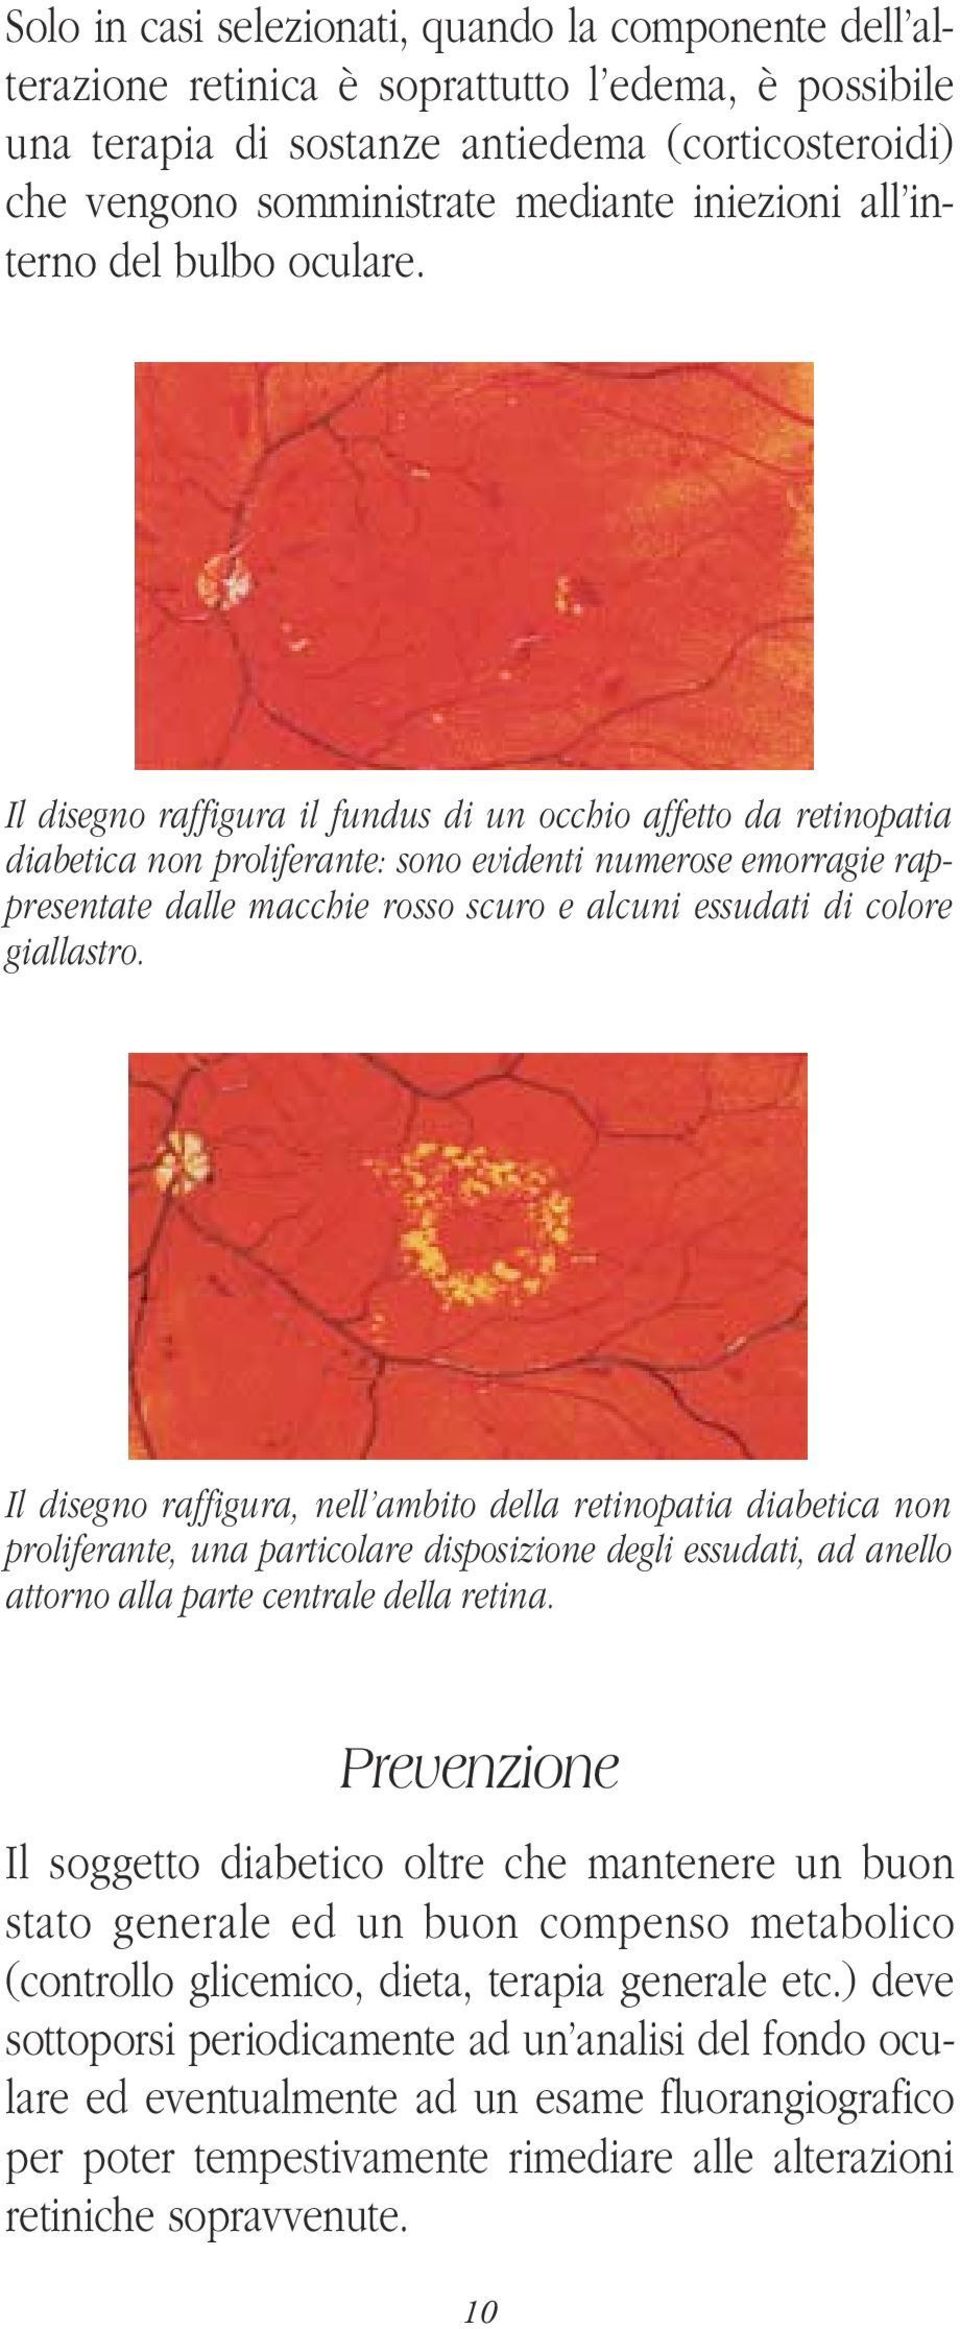 Il disegno raffigura il fundus di un occhio affetto da retinopatia diabetica non proliferante: sono evidenti numerose emorragie rappresentate dalle macchie rosso scuro e alcuni essudati di colore